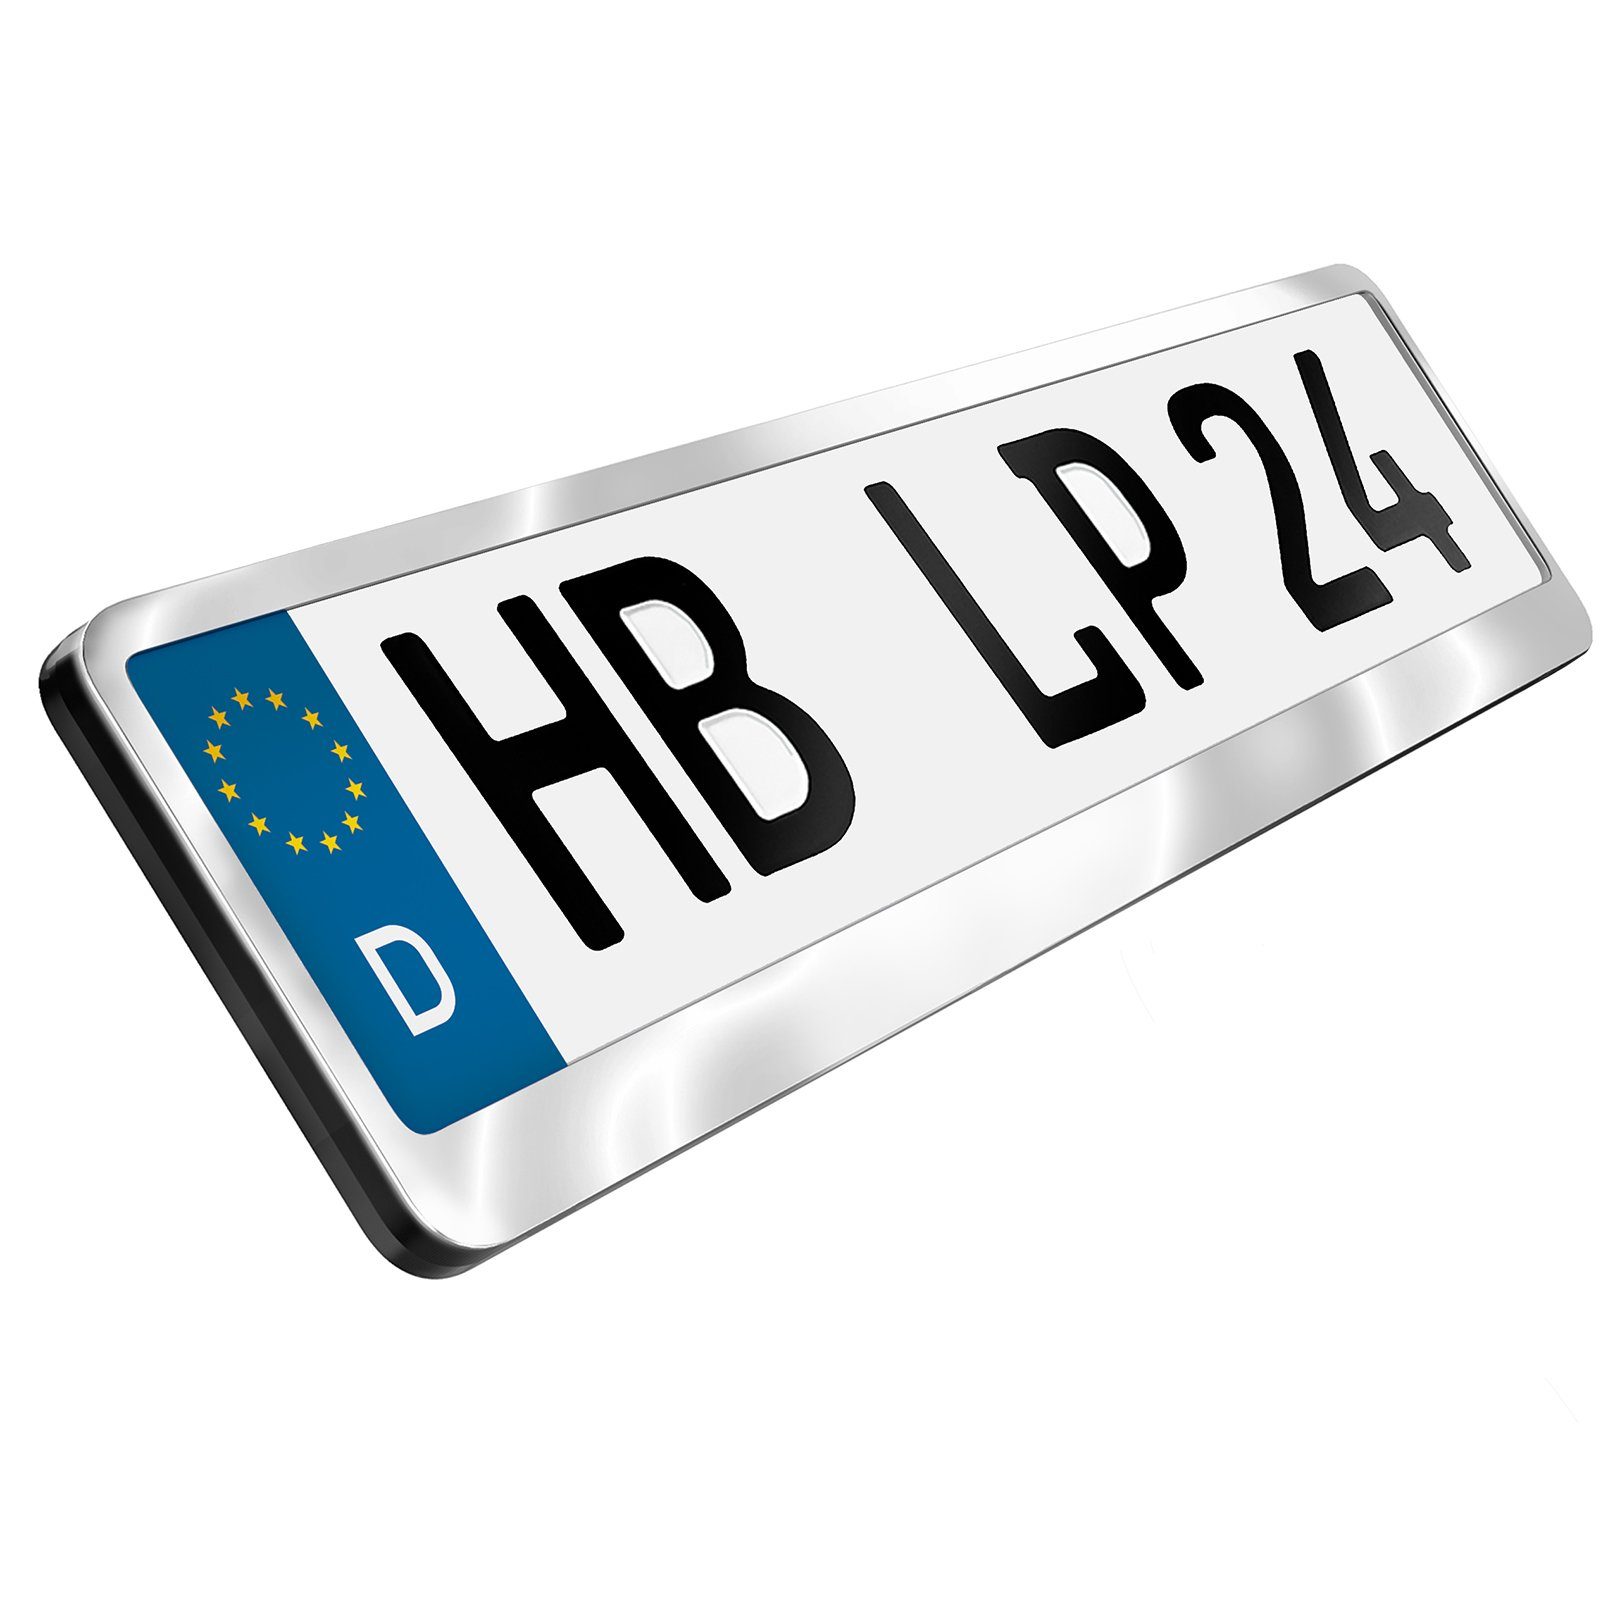 L & P Car Design Kennzeichenhalter für Auto Edelstahl hochglanz poliert Kennzeichenhalter V2A, (2 Stück)